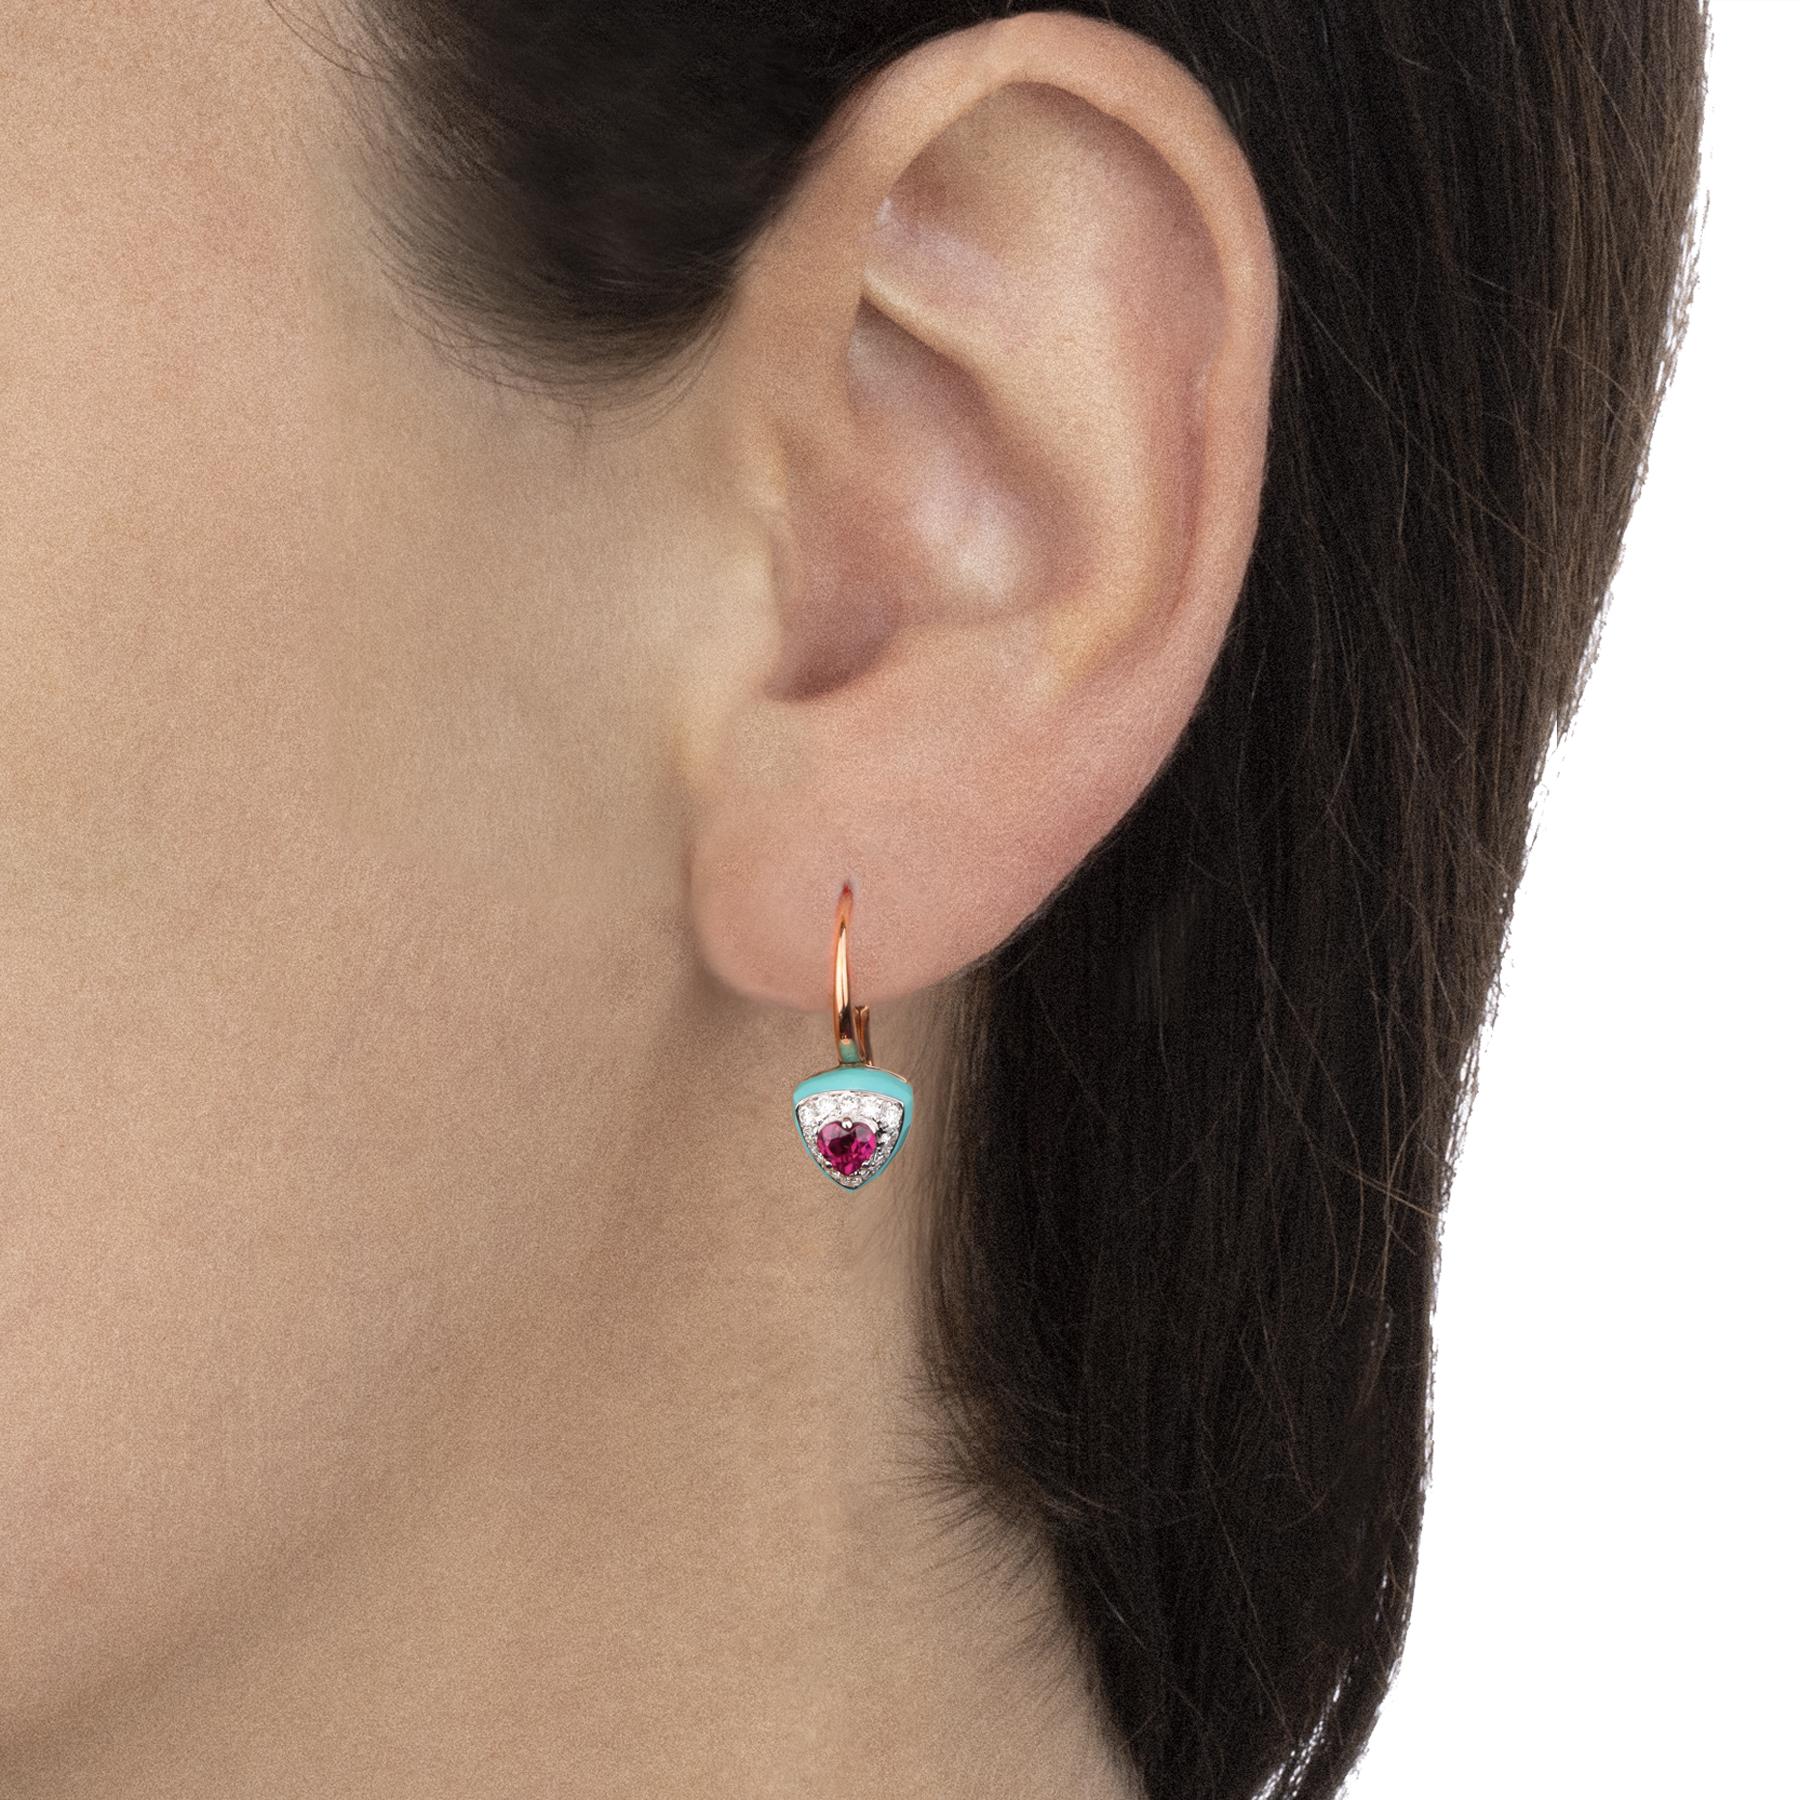 Kostbare Ohrringe aus Roségold, die sich durch intensive und frische Farben auszeichnen. Eine verspielte Harmonie aus farbigen Steinen und glänzenden Diamanten für ein modernes Design.

Ohrringe aus gegossenem Roségold, Türkis im Dreiecksschliff